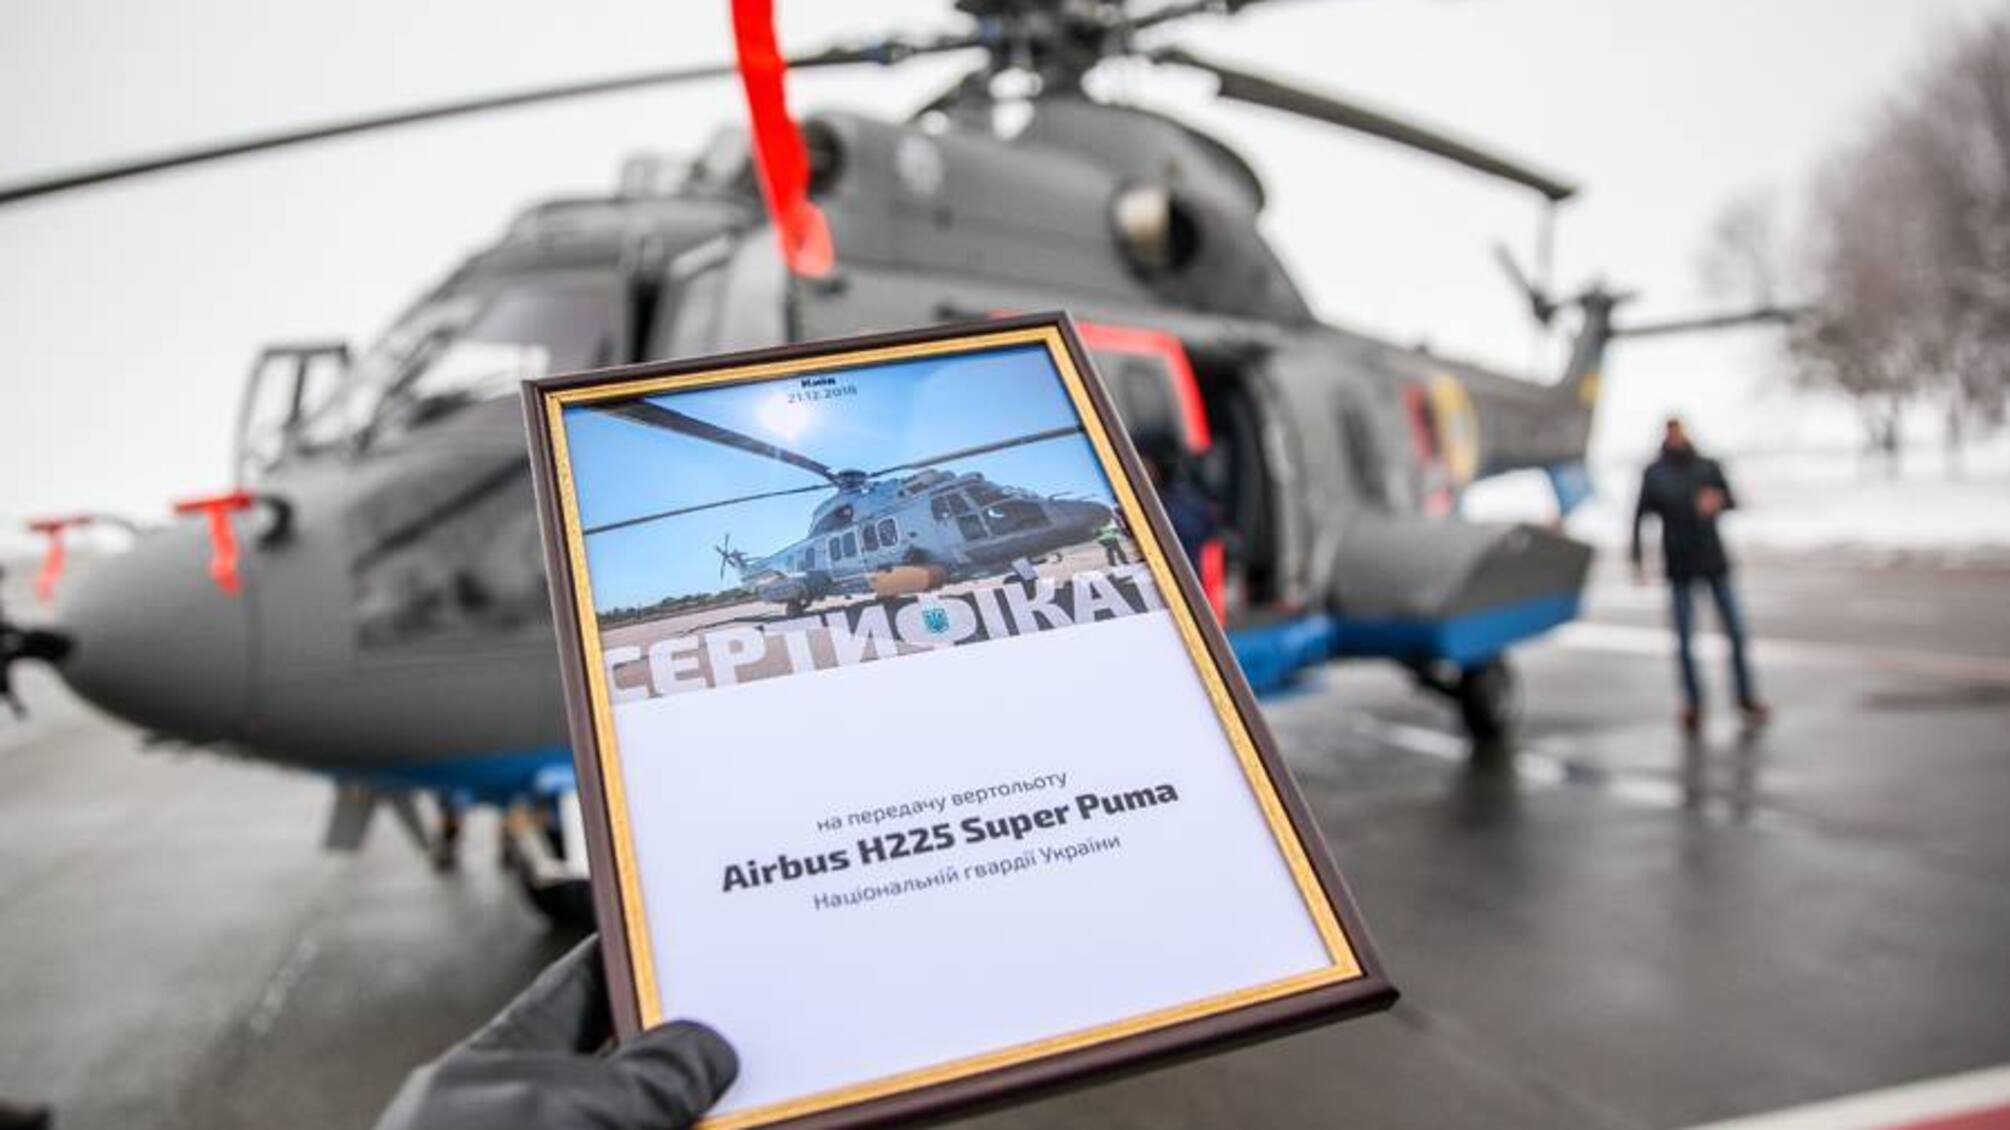 Гелікоптер H225 Super Puma, на якому розбився Монастирський: характеристики та особливості